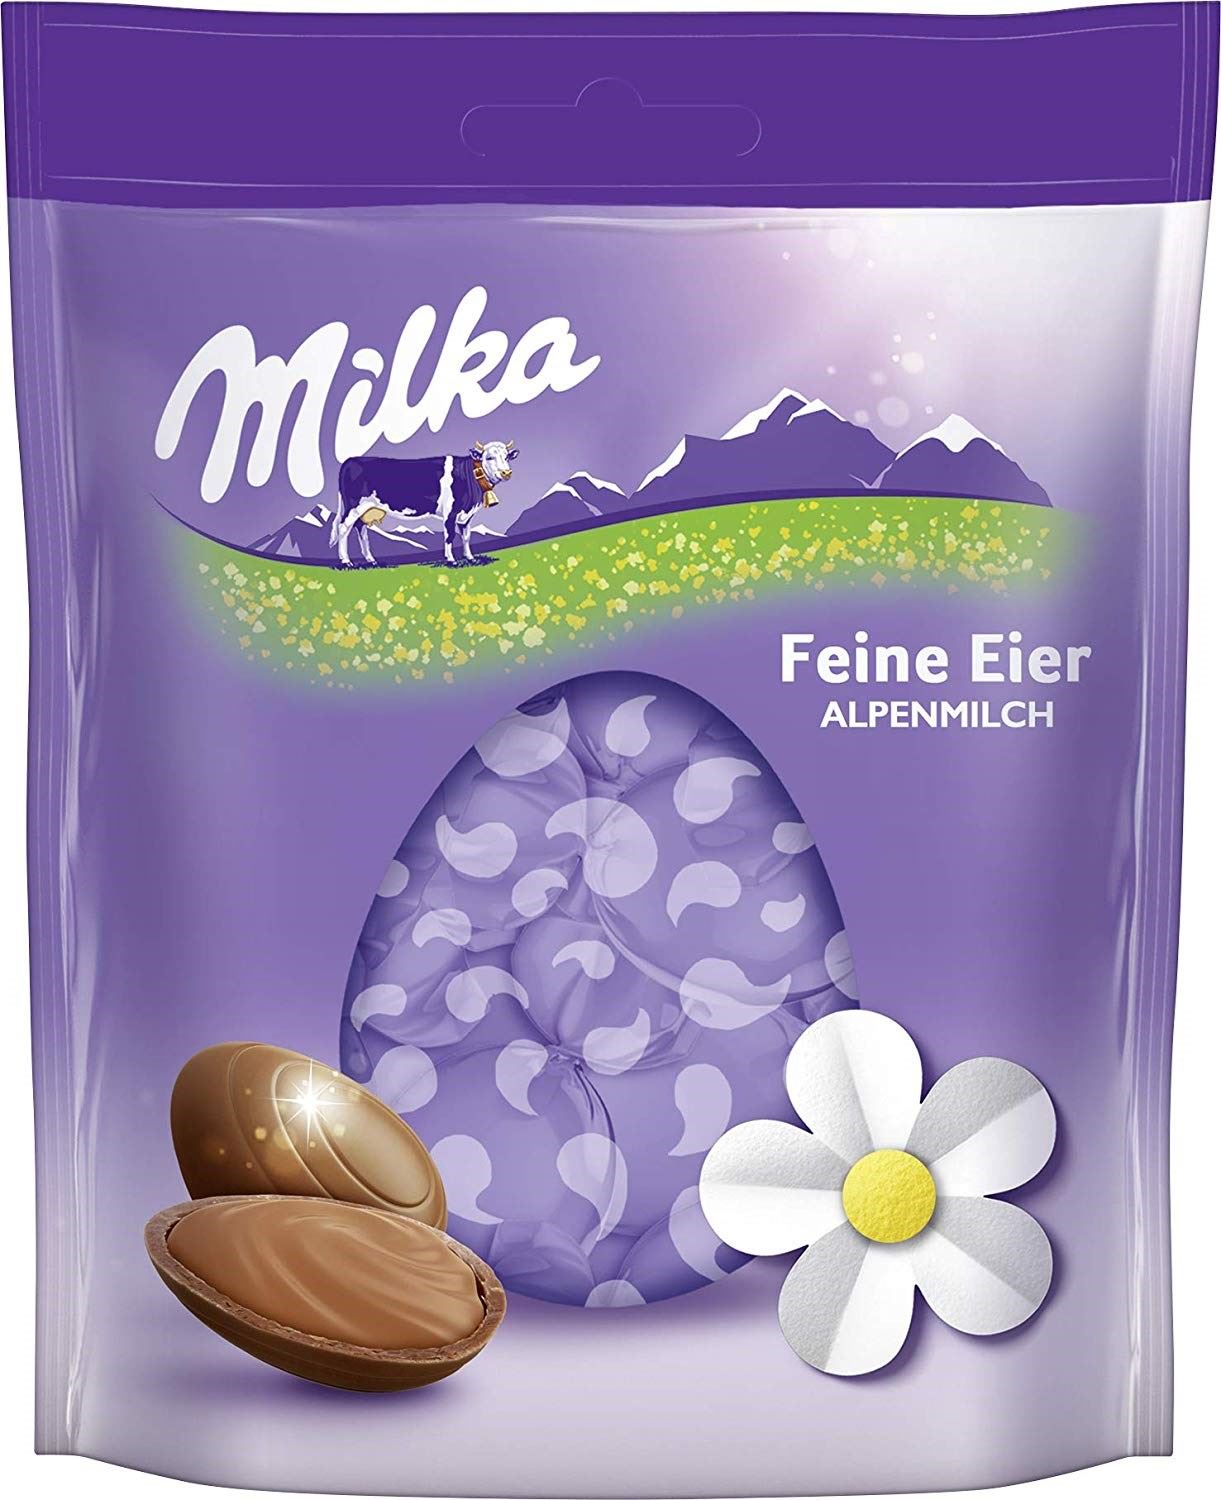 Milka Feine Eier Alpenmilch Sütlü Çikolata 90g Kısmet Şarküteri